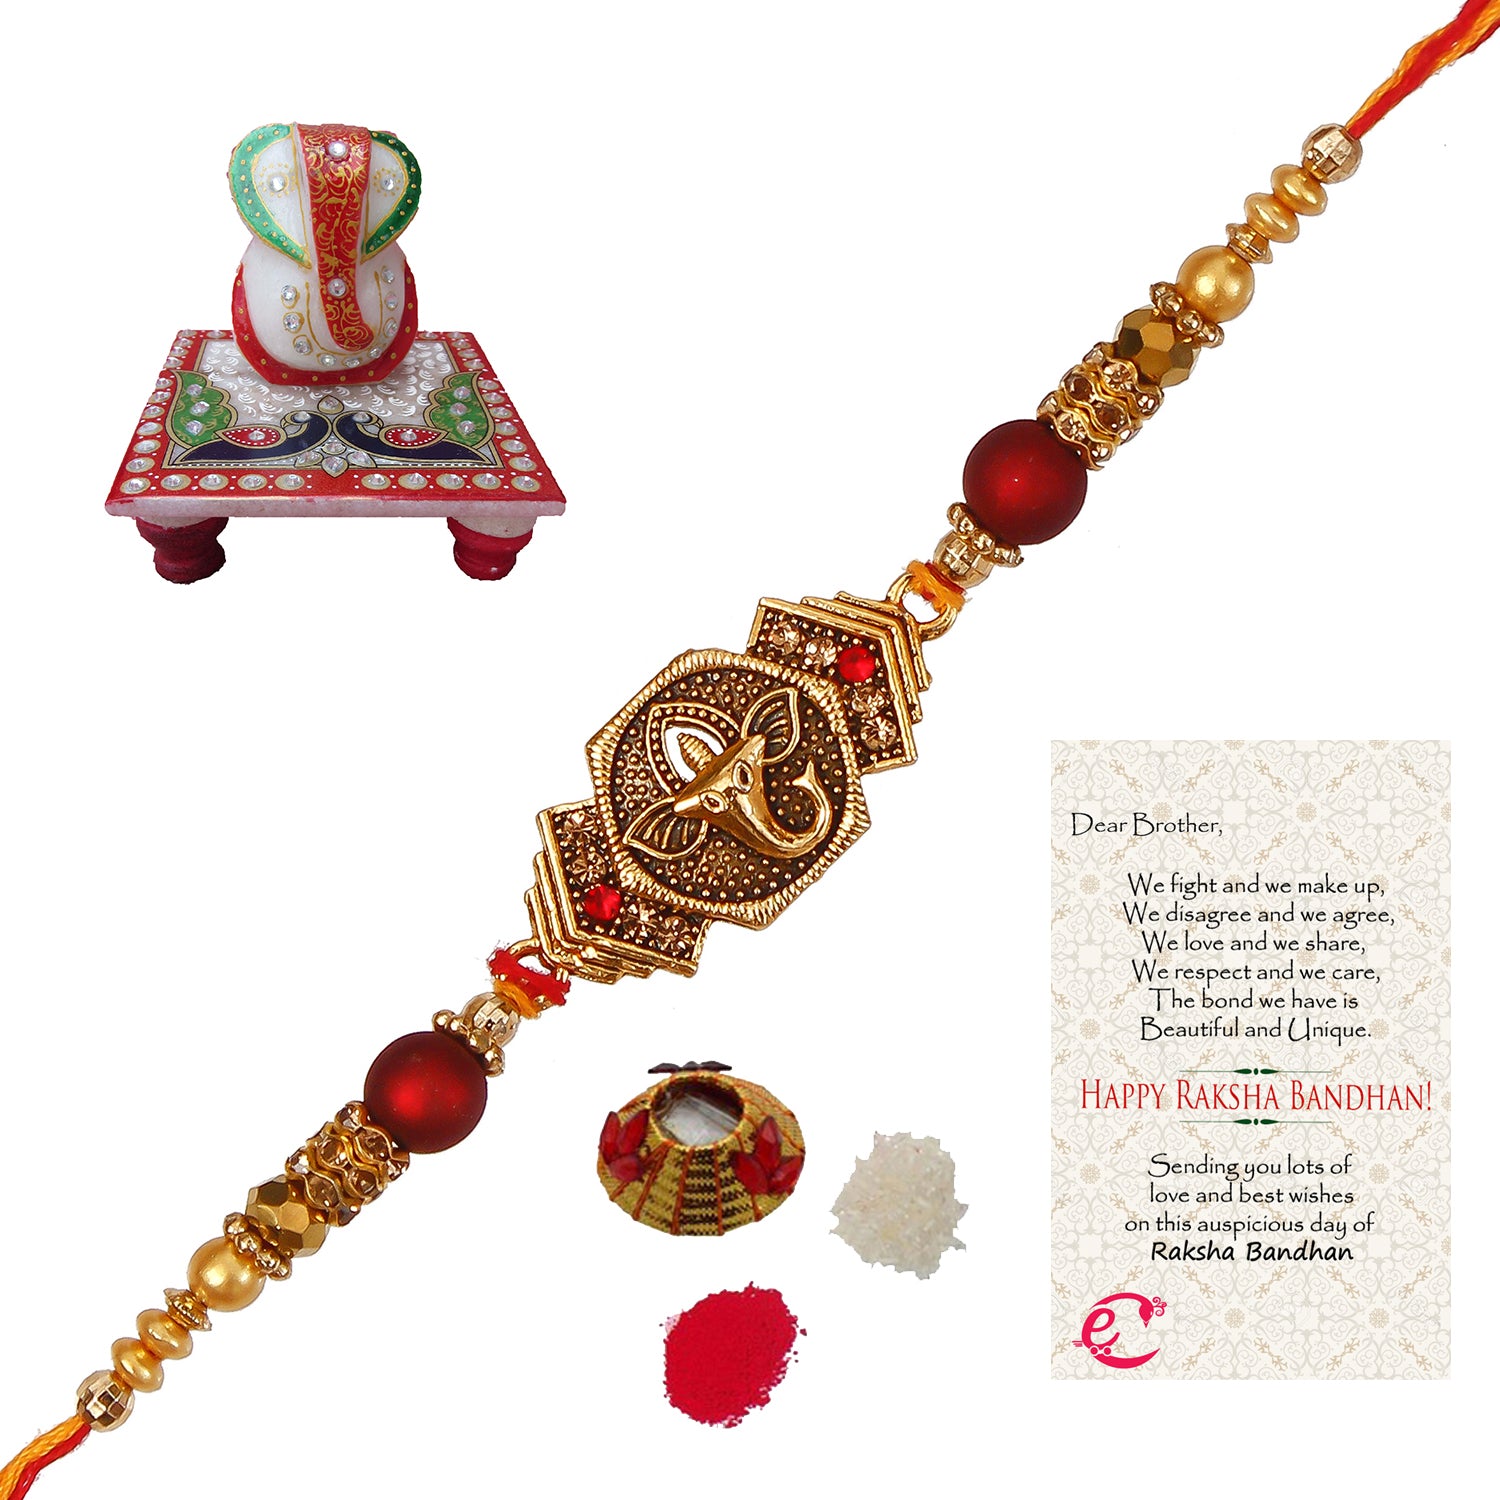 Designer Religious Ganesha Rakhi with Lord Ganesha Marble Chowki and Roli Tikka Matki, Best Wishes Greeting Card